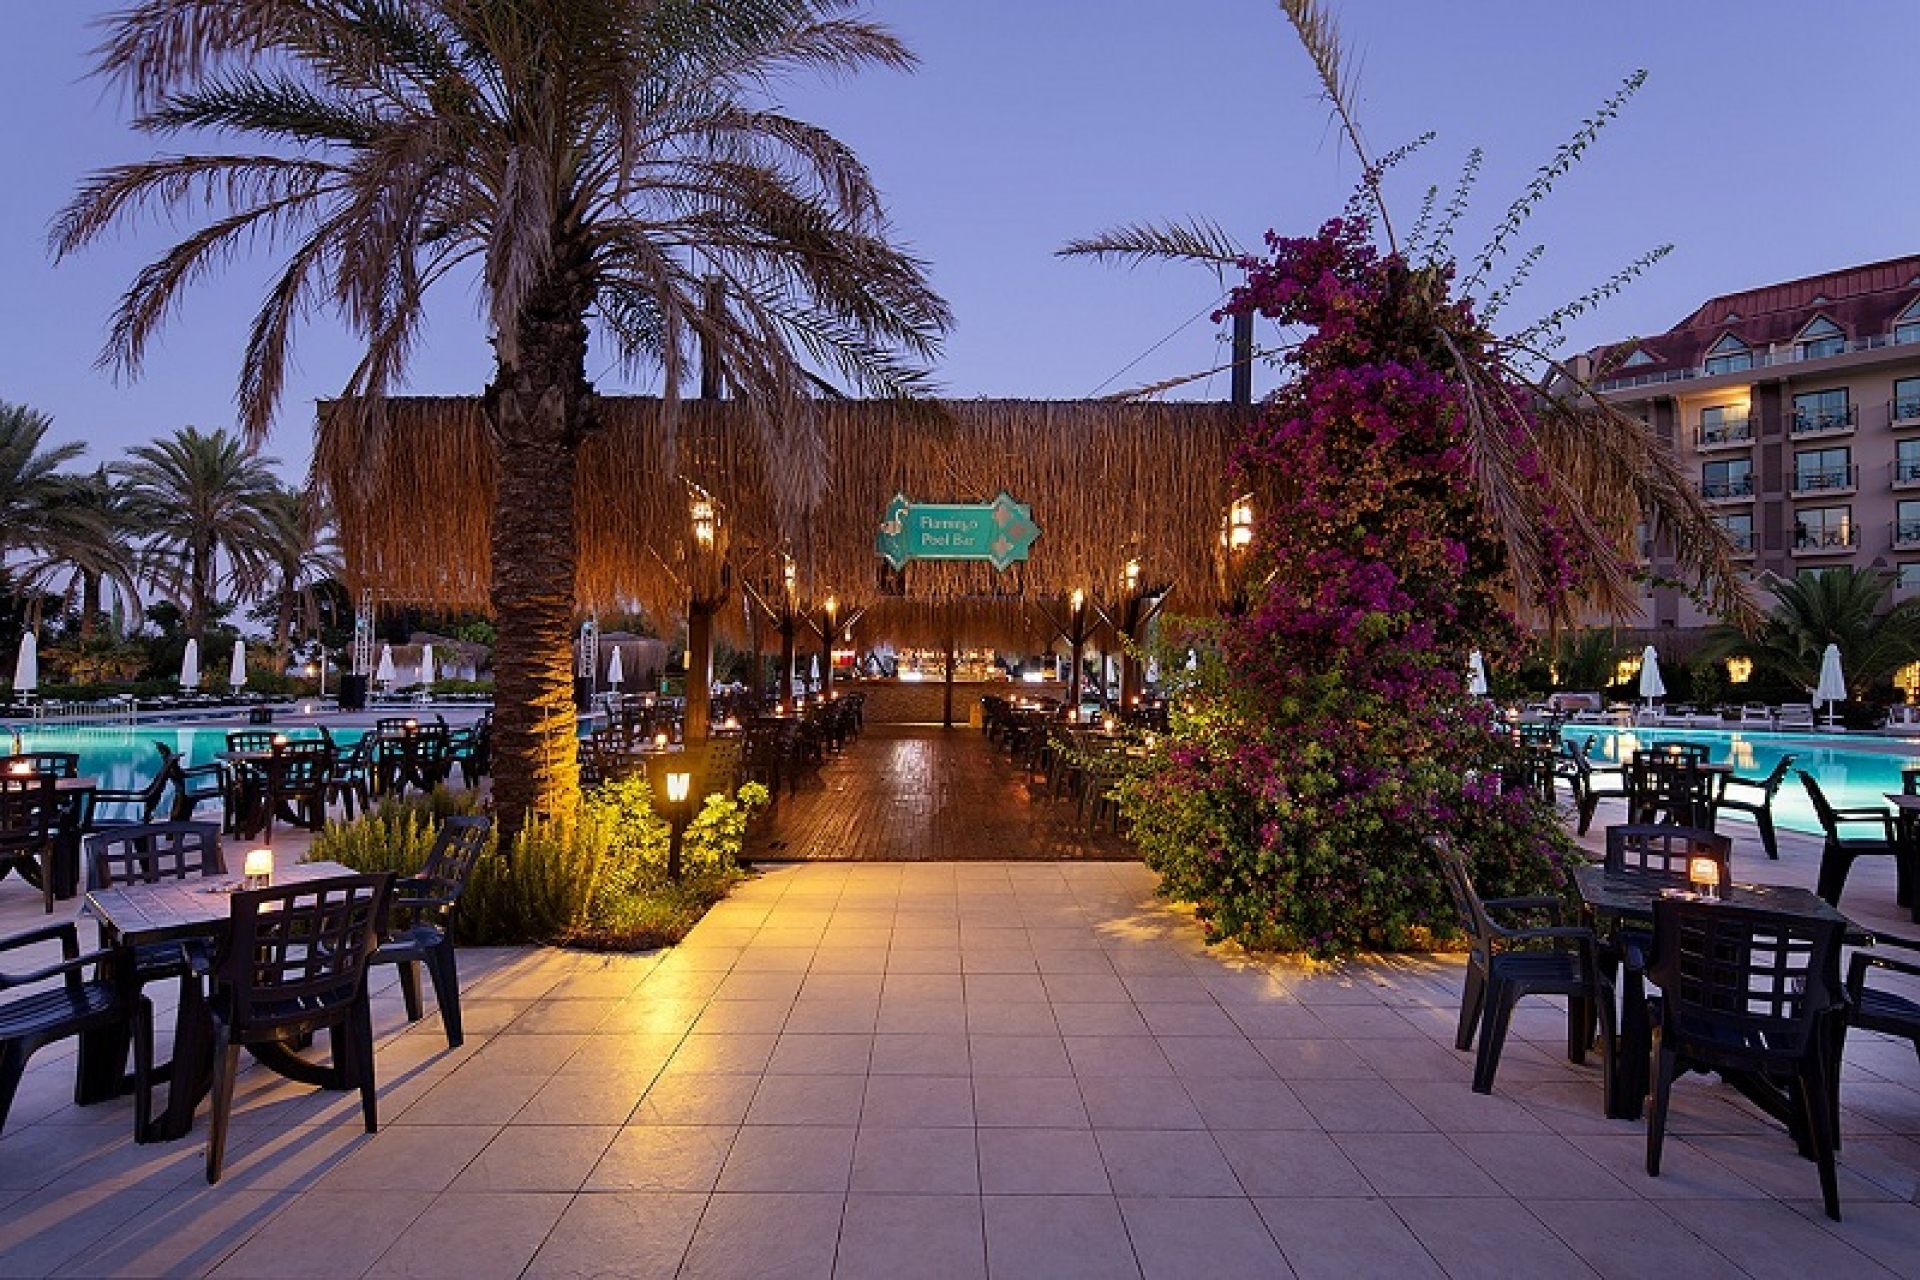 Nashira Resort Hotel